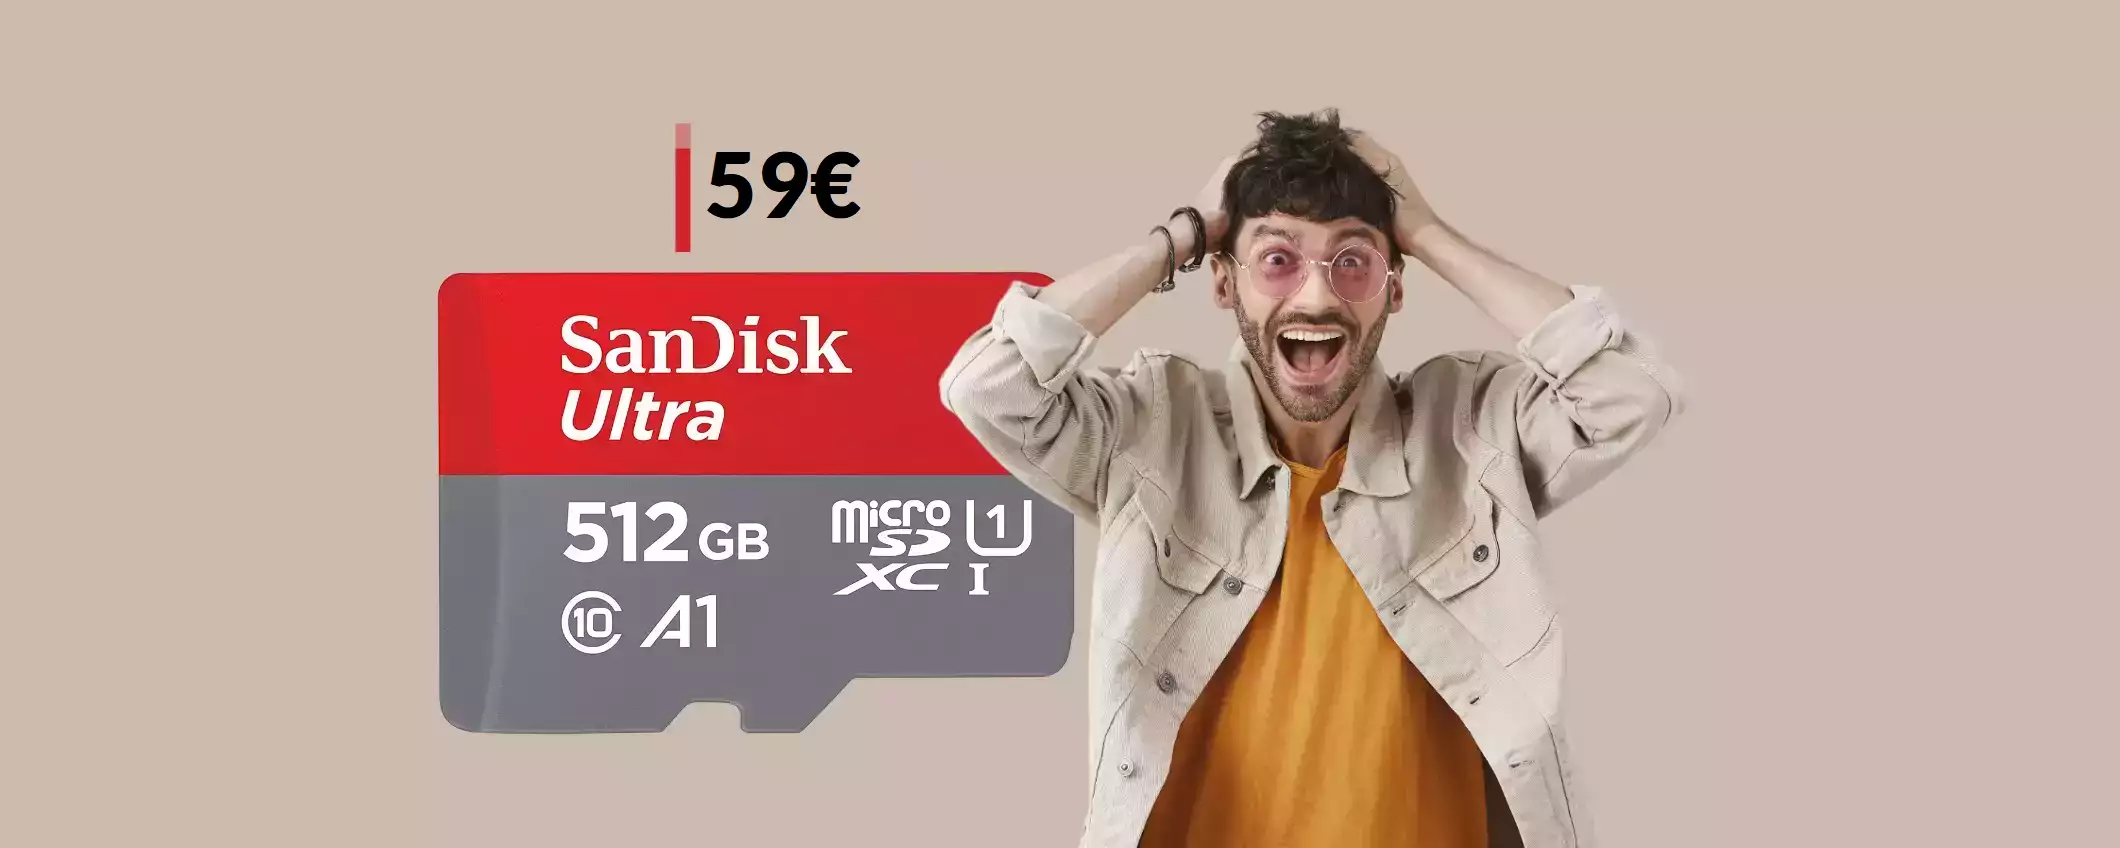 MicroSD SanDisk 512GB: la più veloce spendendo solamente 59€